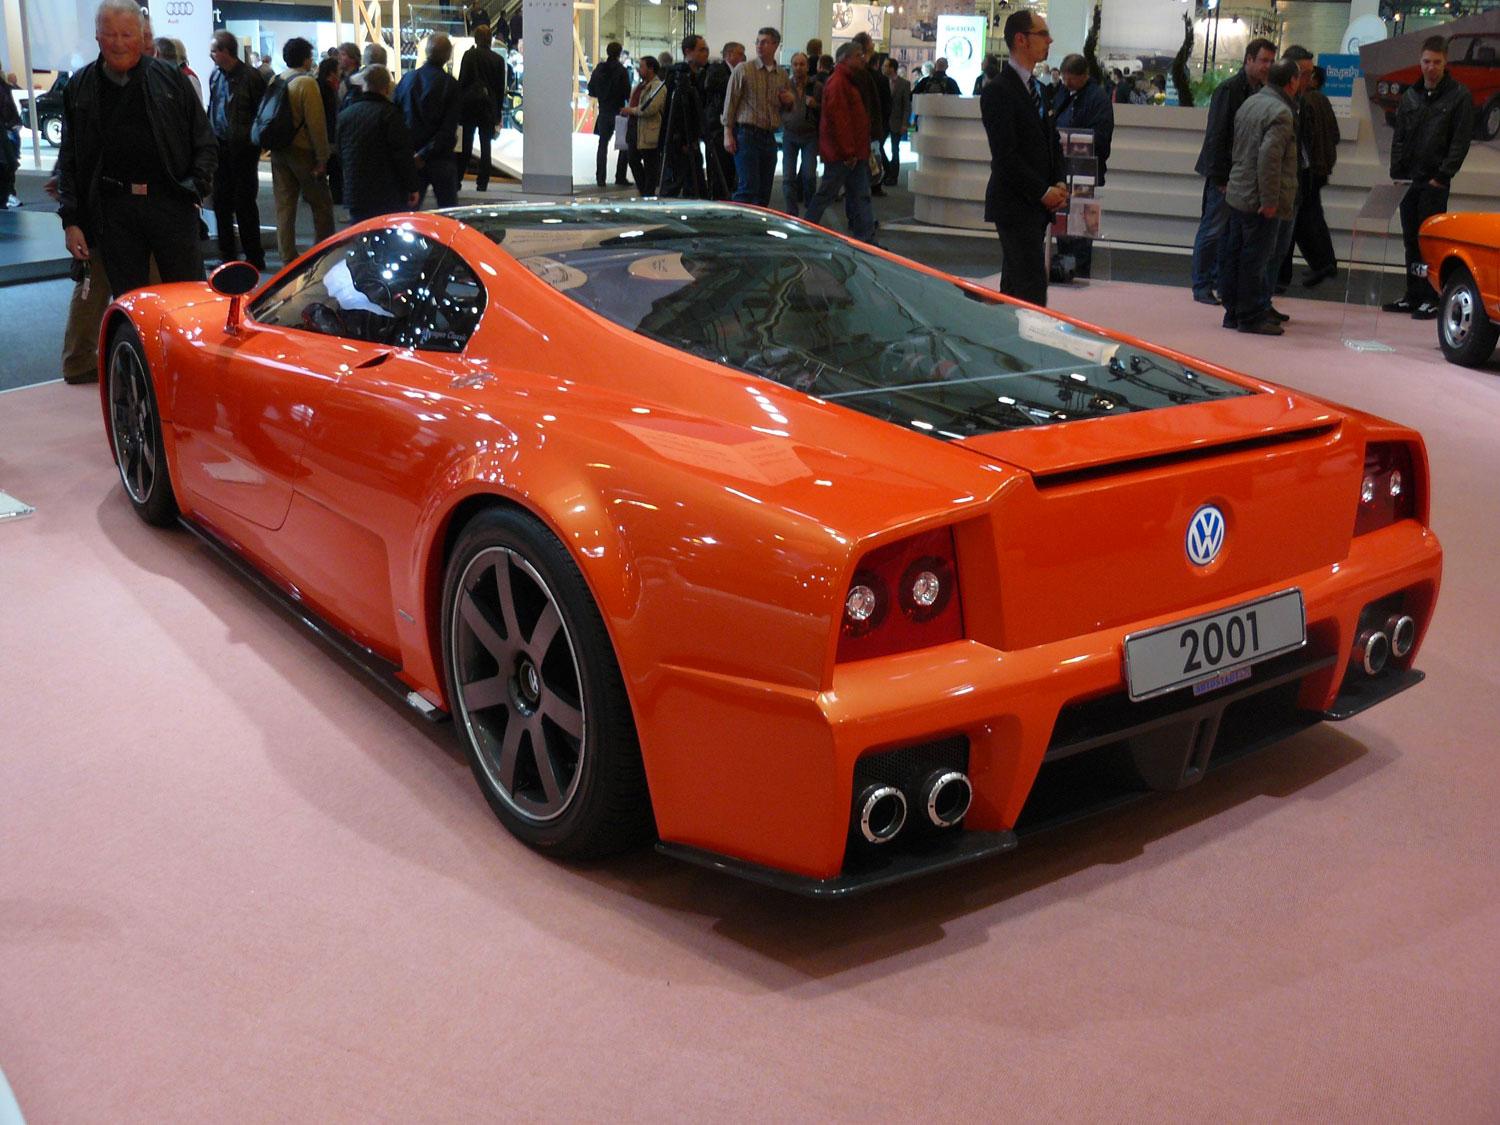 VW W12 Nardo W12 Nardo från 2001 var en av de bilar som la grunden till Bugatti Veyron.